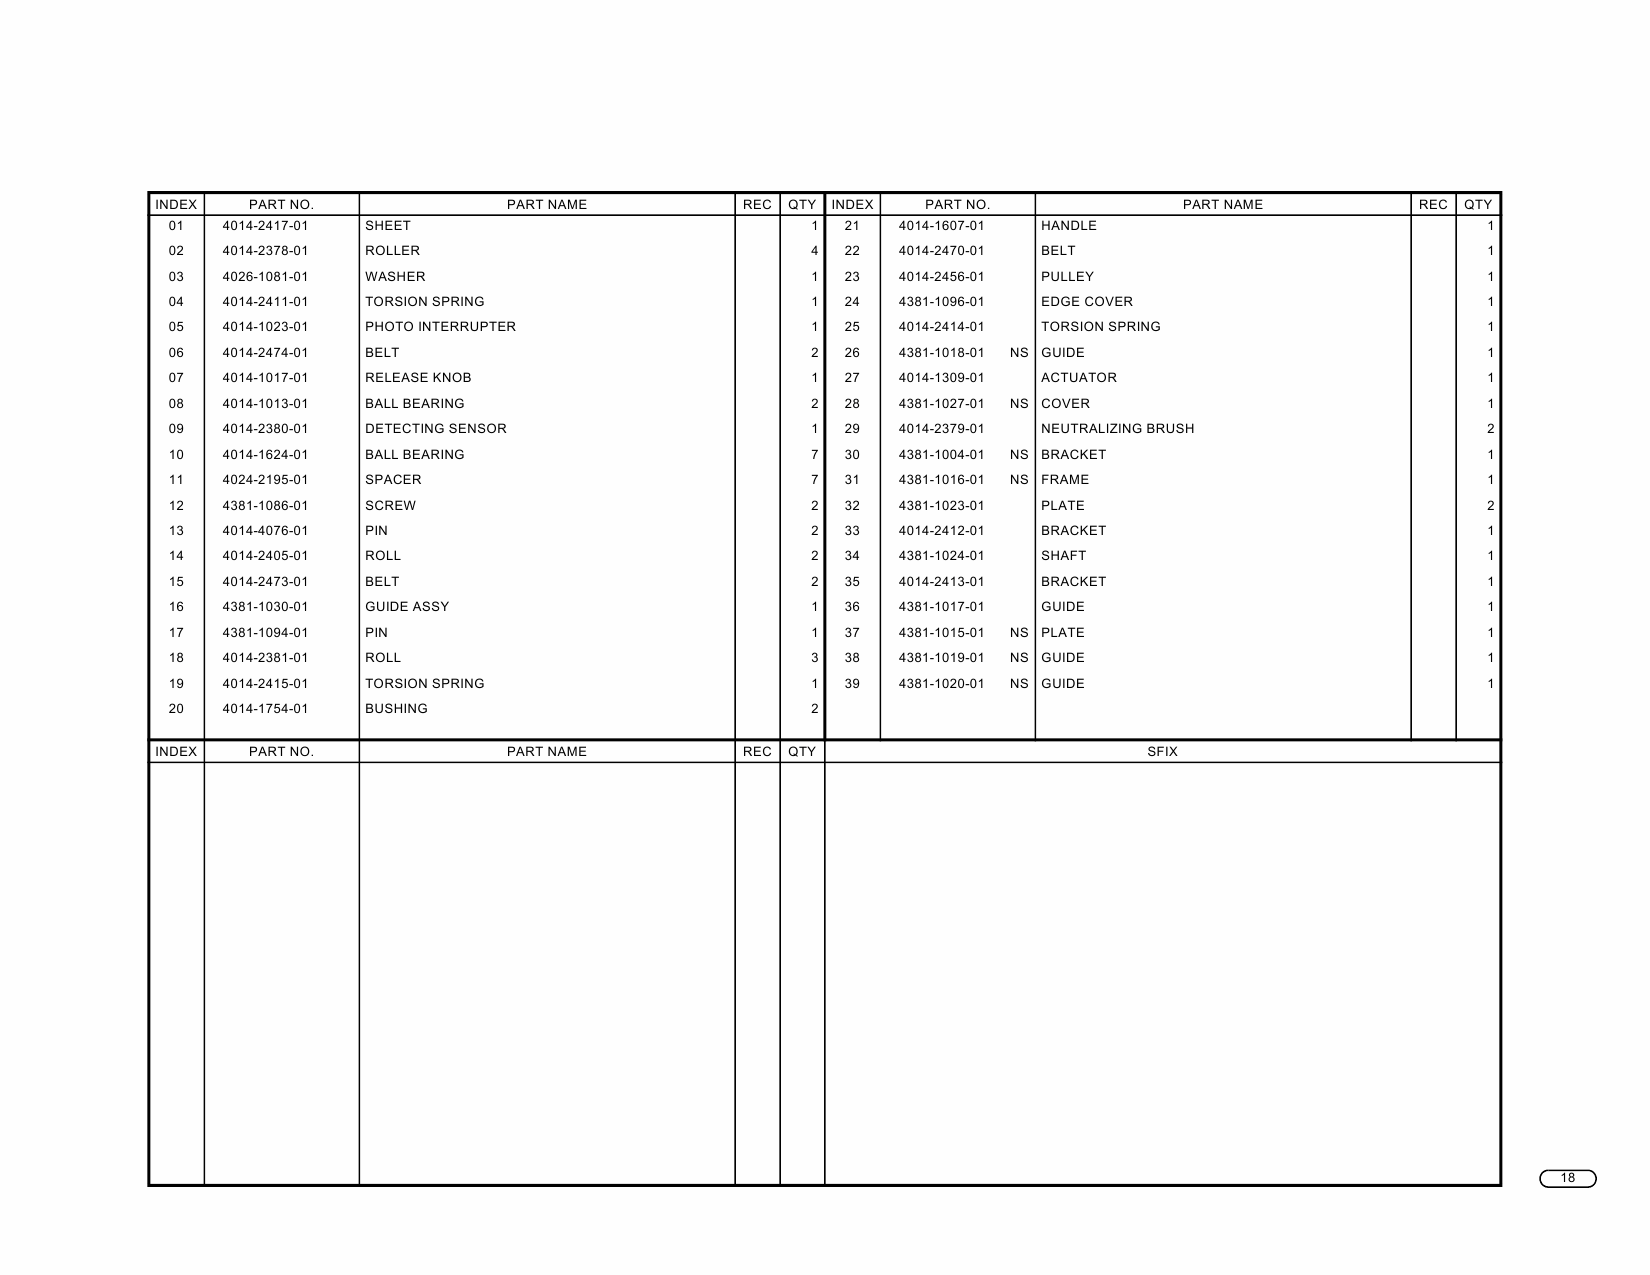 Konica-Minolta Options TMG-2 Parts Manual-3